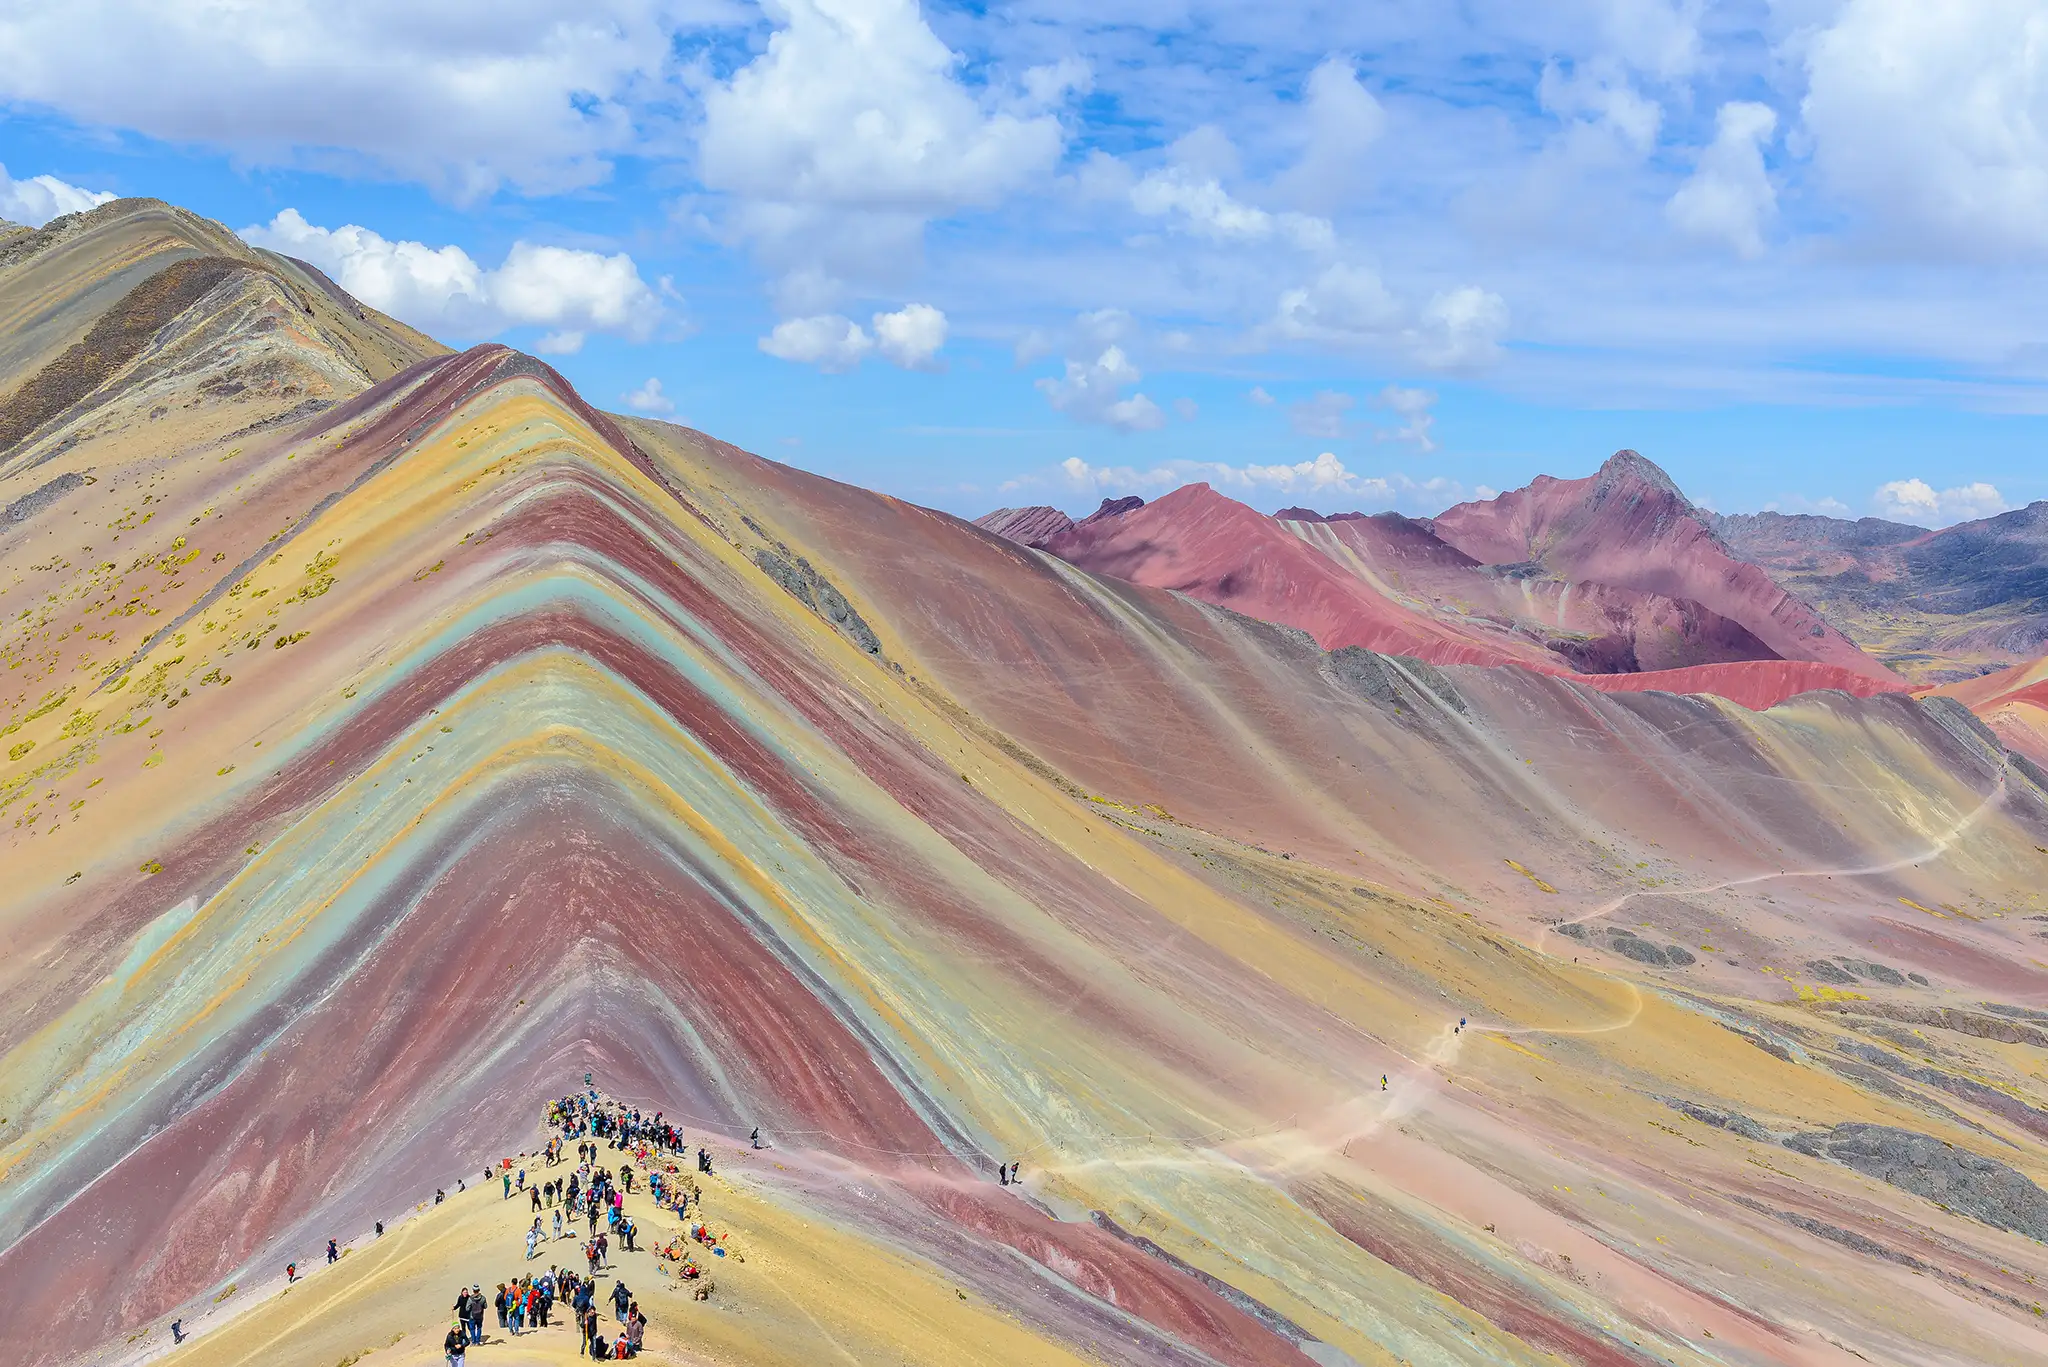 Vinicunca, also known as Rainbow Mountain, near Cusco, Peru.